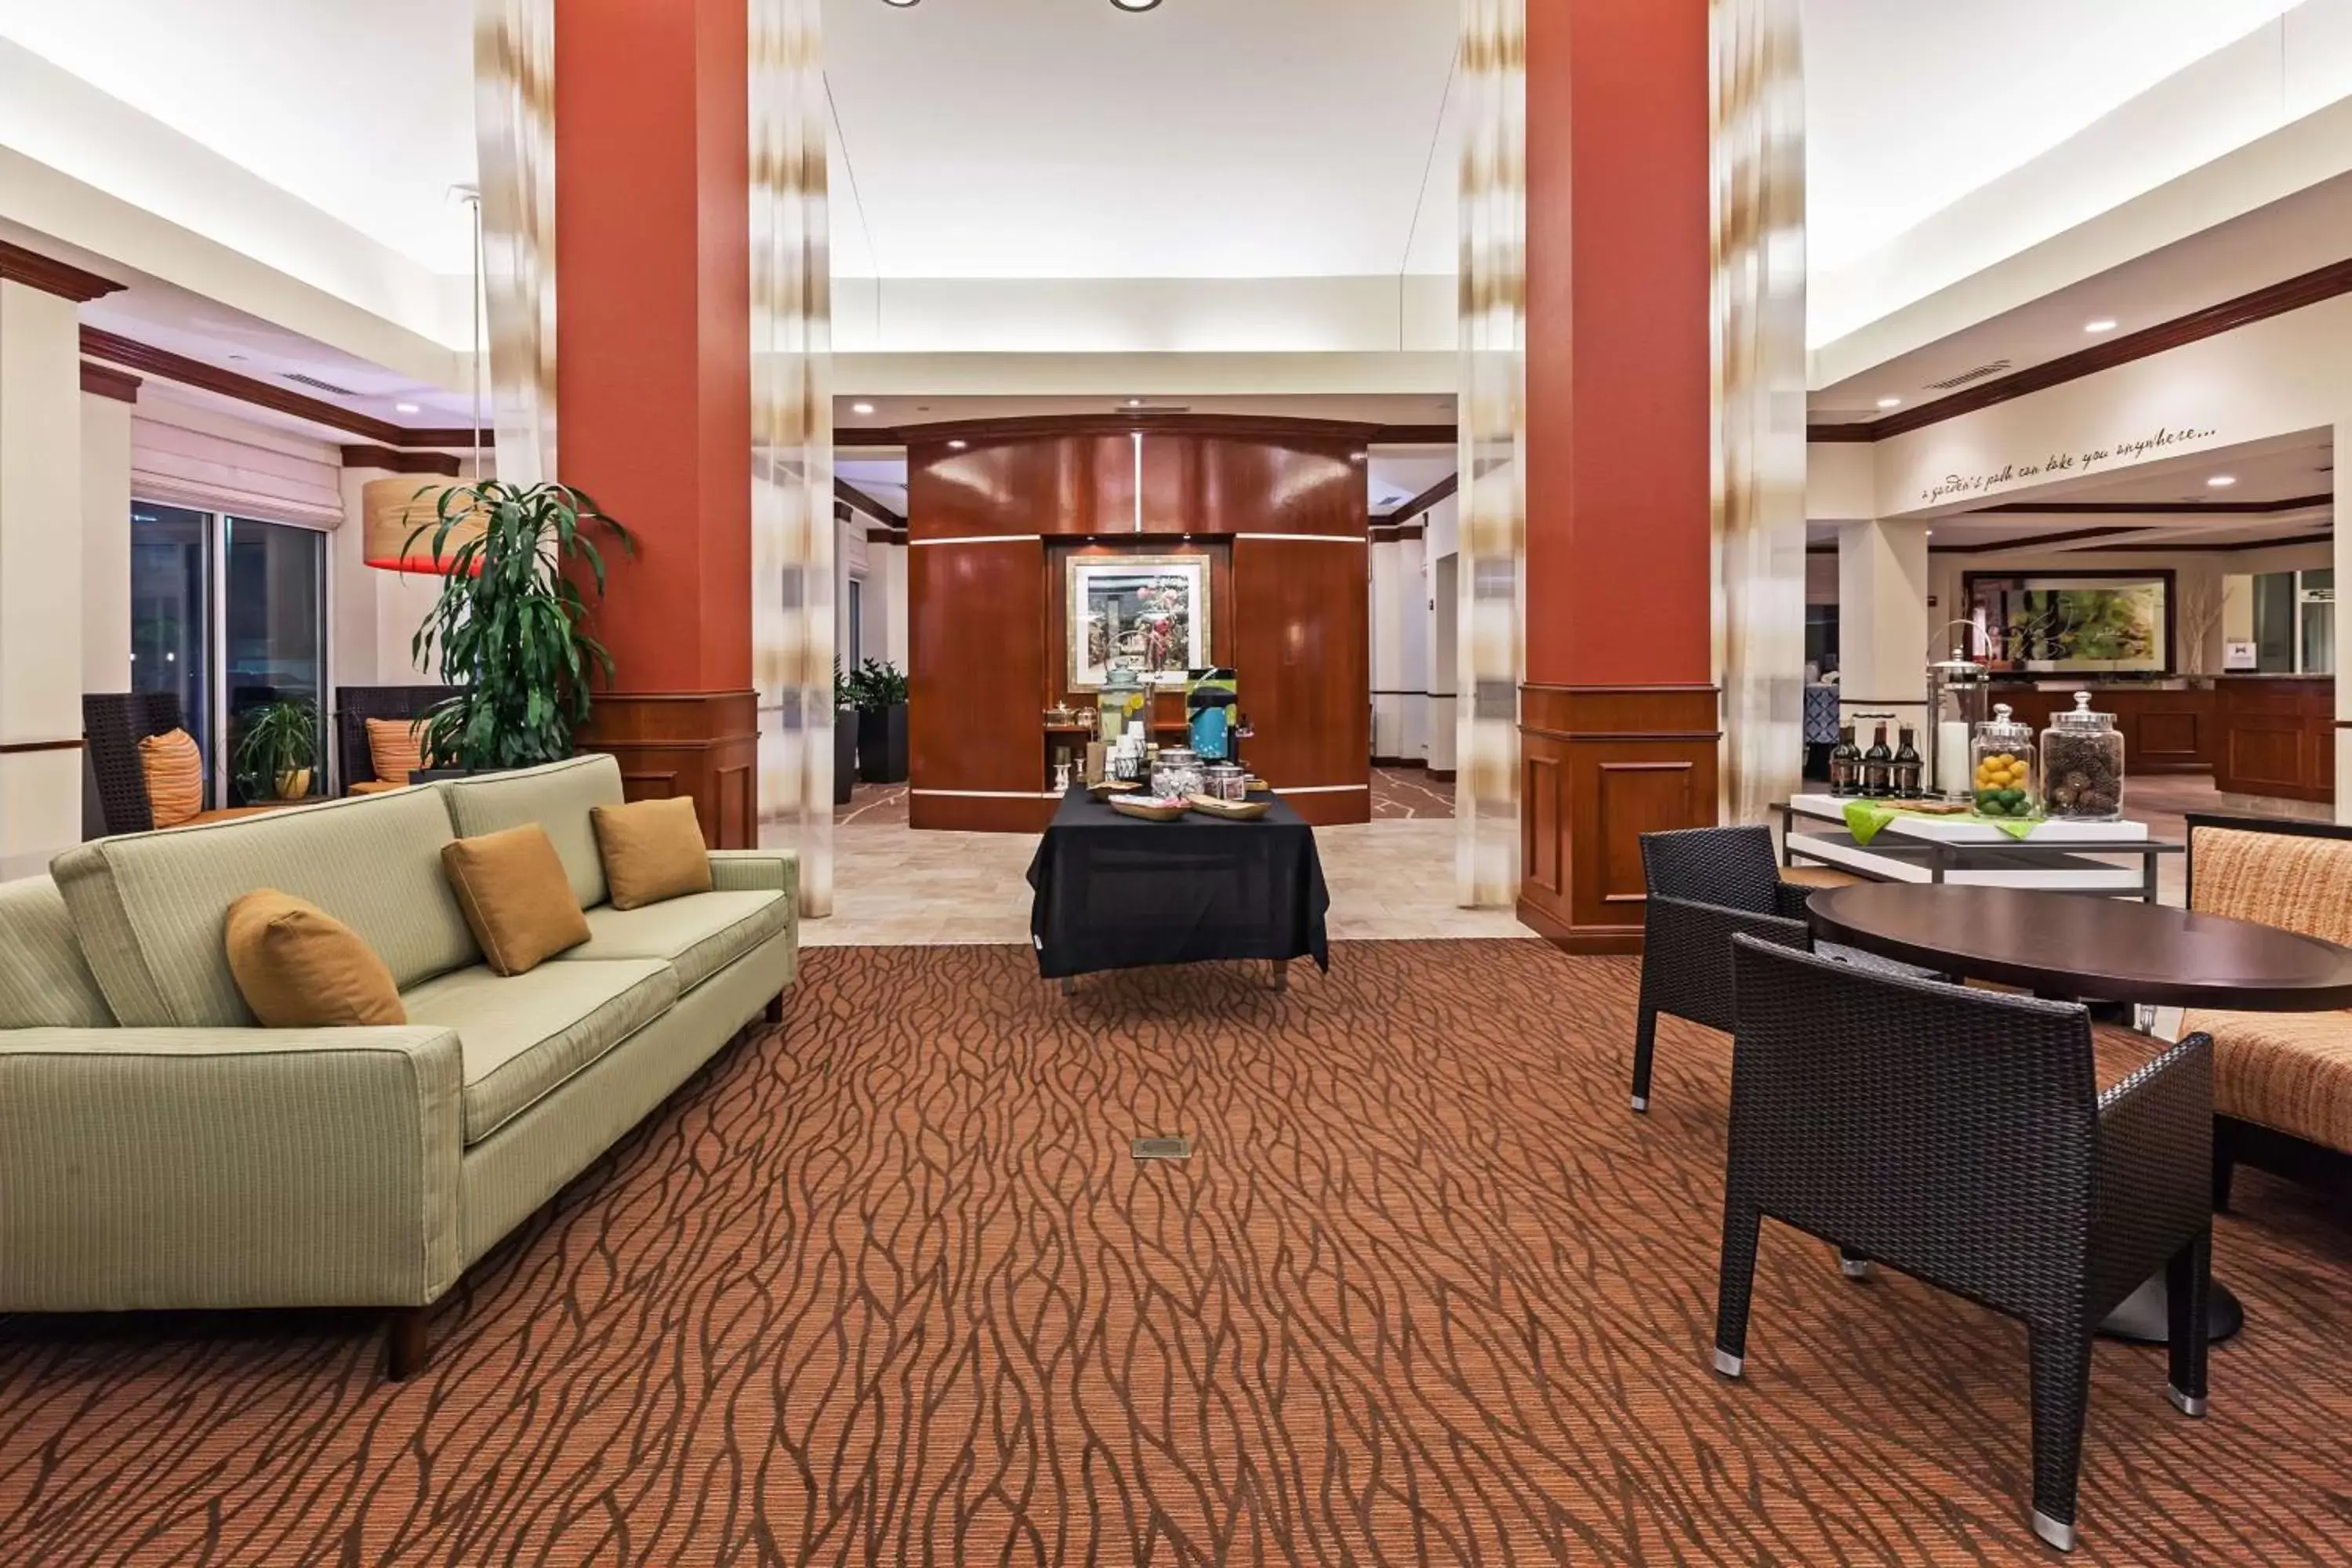 Lobby or reception, Lobby/Reception in Hilton Garden Inn Corpus Christi